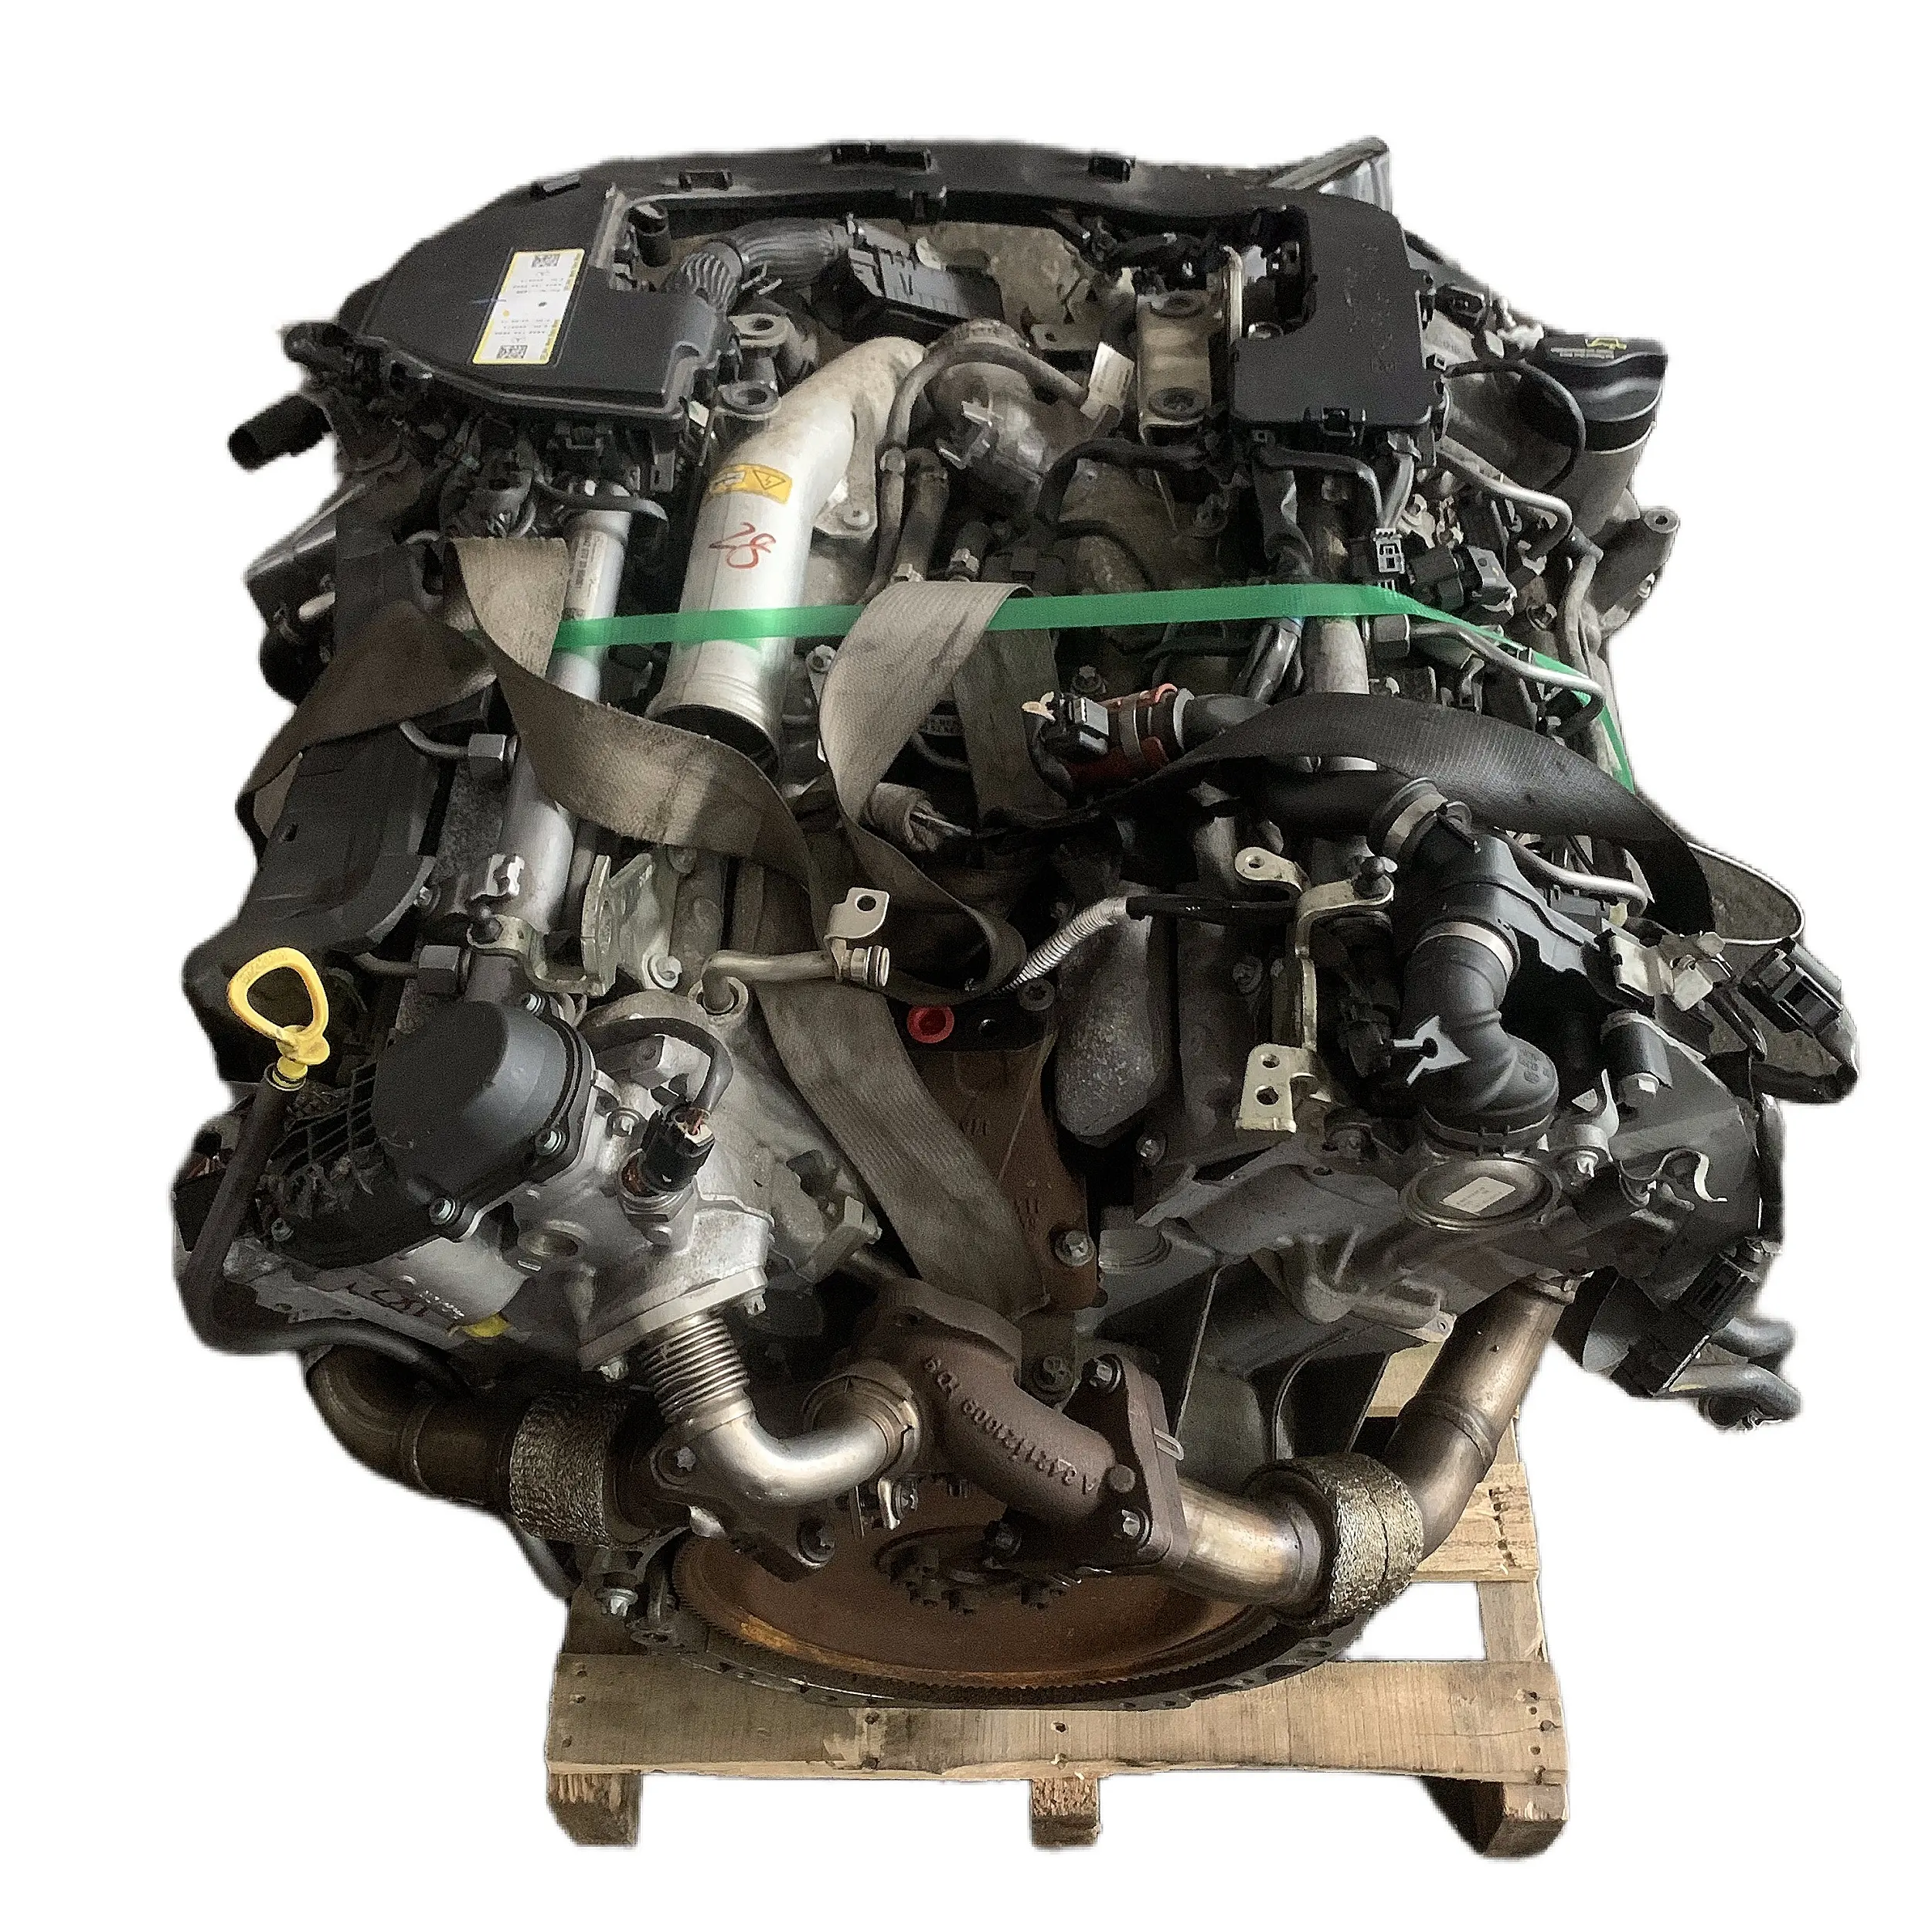 थोक कारखाने की कीमत ml350 gles350 gle350 gl350 w166 m642 m642 826 इस्तेमाल किए जाने वाले मर्सेडीज बेंज इंजन के लिए